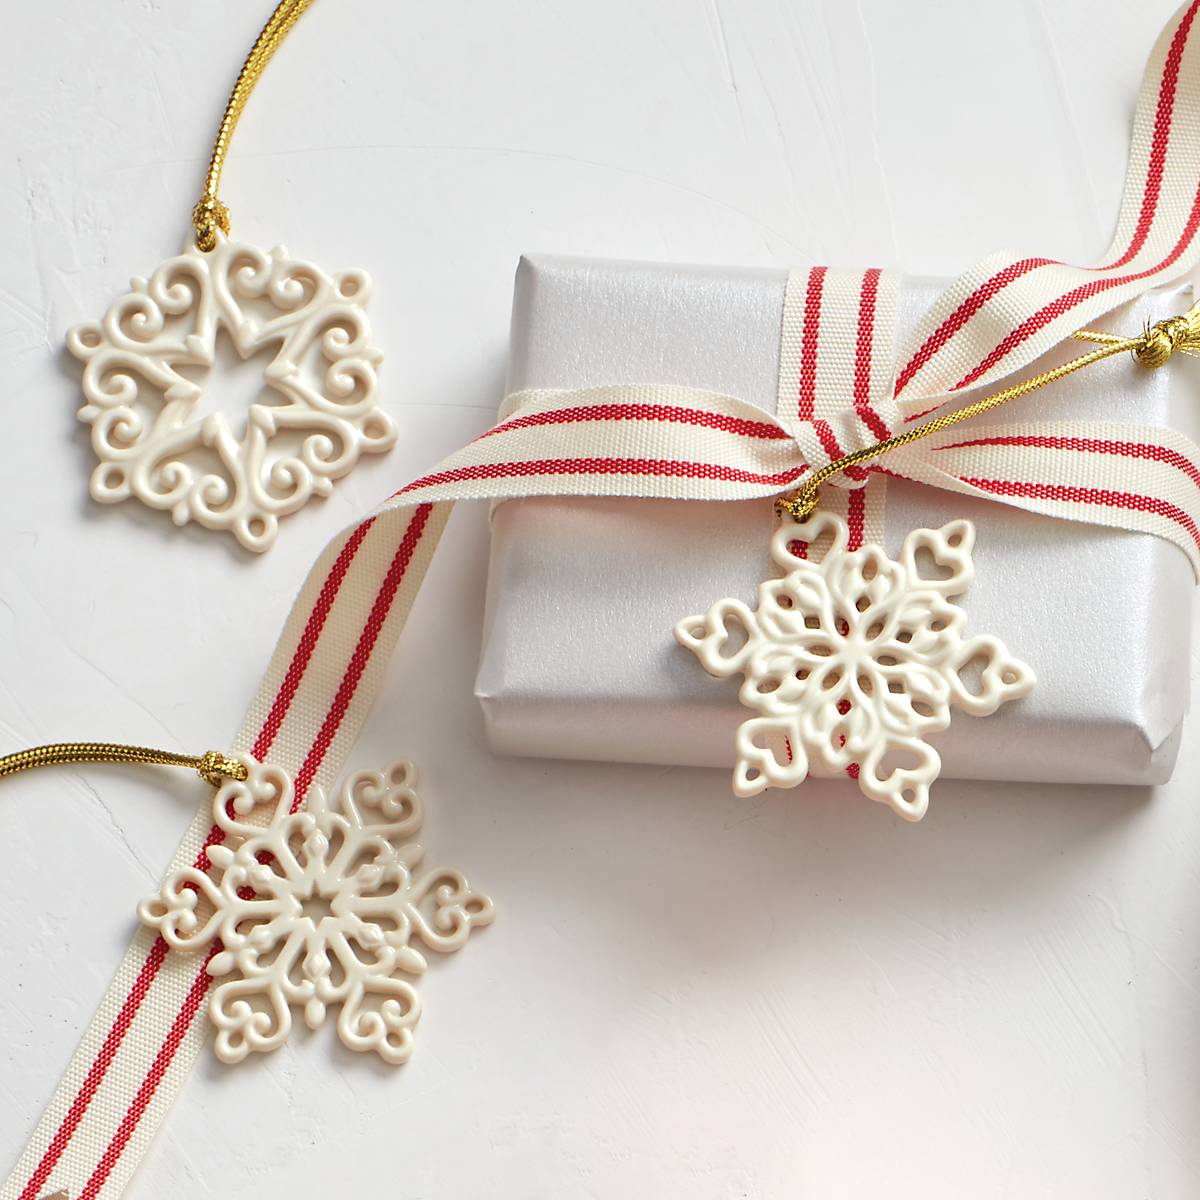 5500 – Mini Snowflakes Ornament Kit